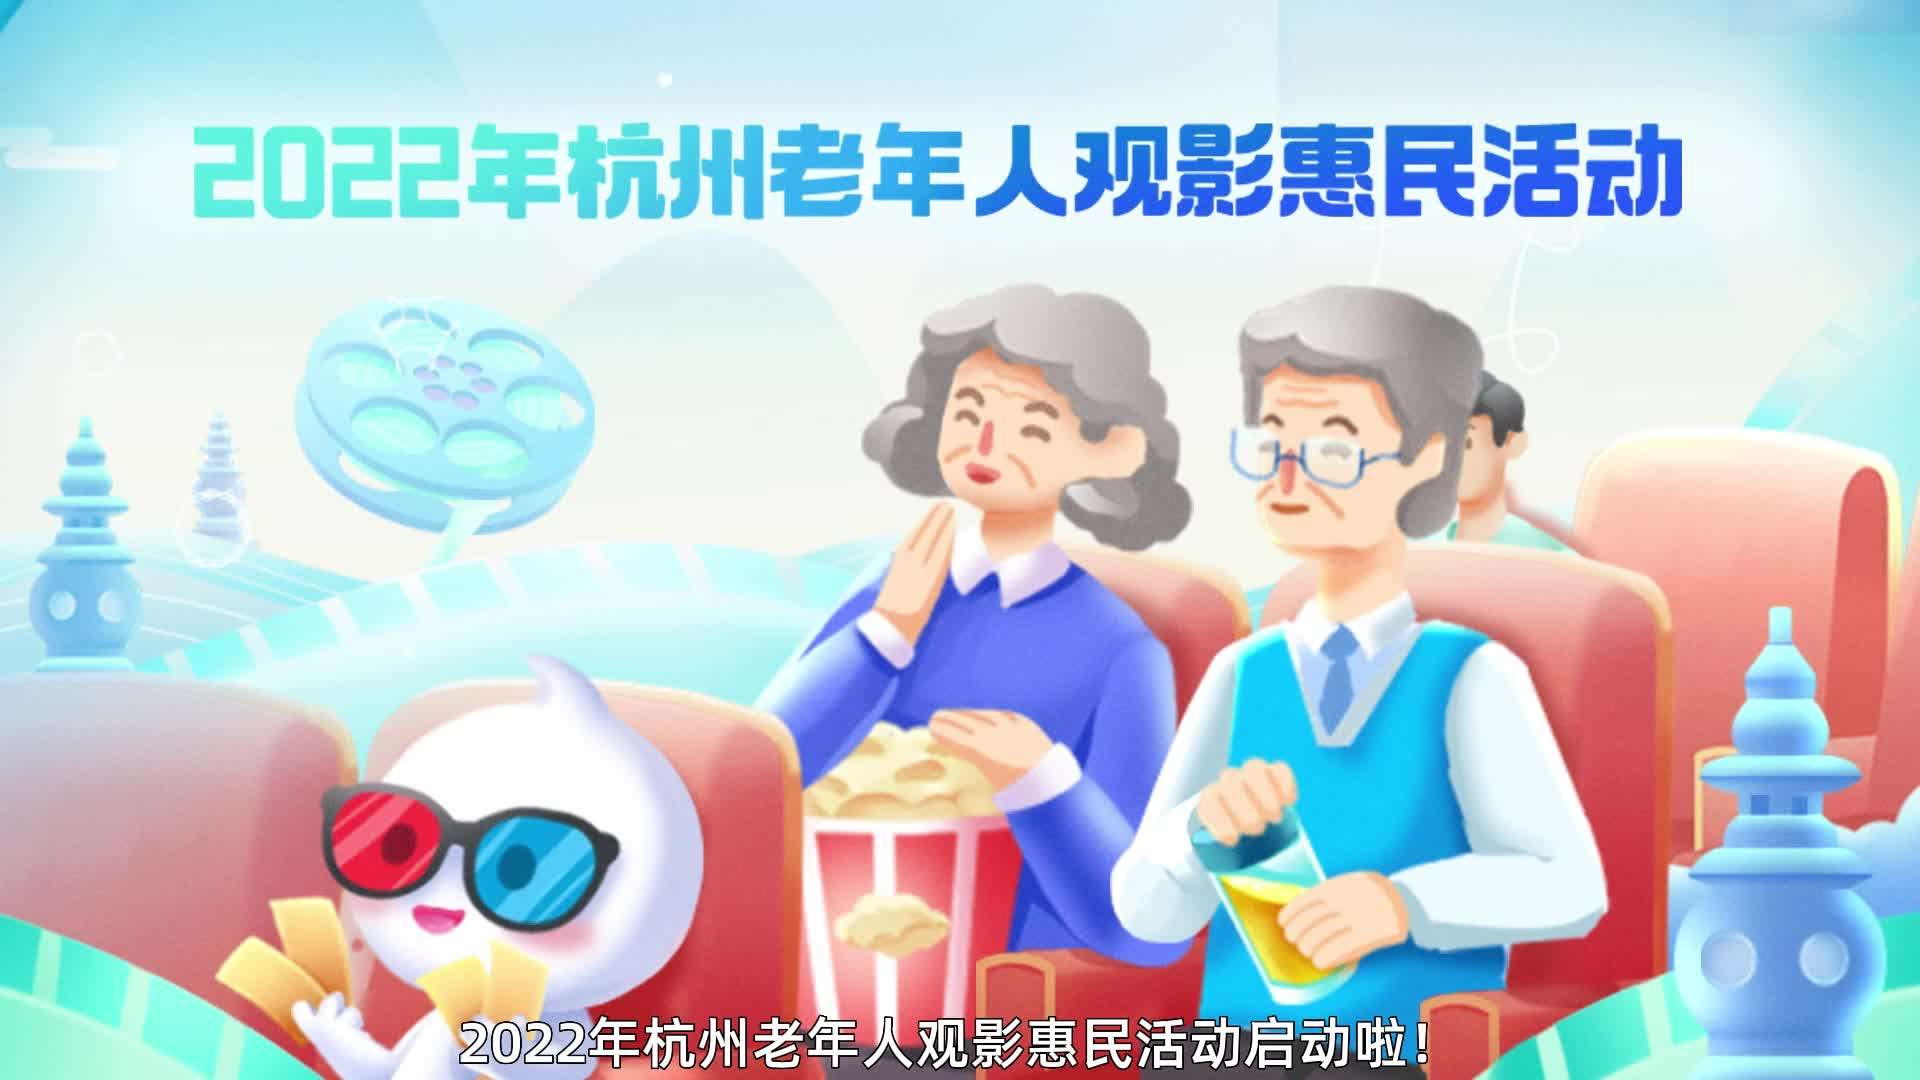 2022杭州老年观影惠民活动宣传动画